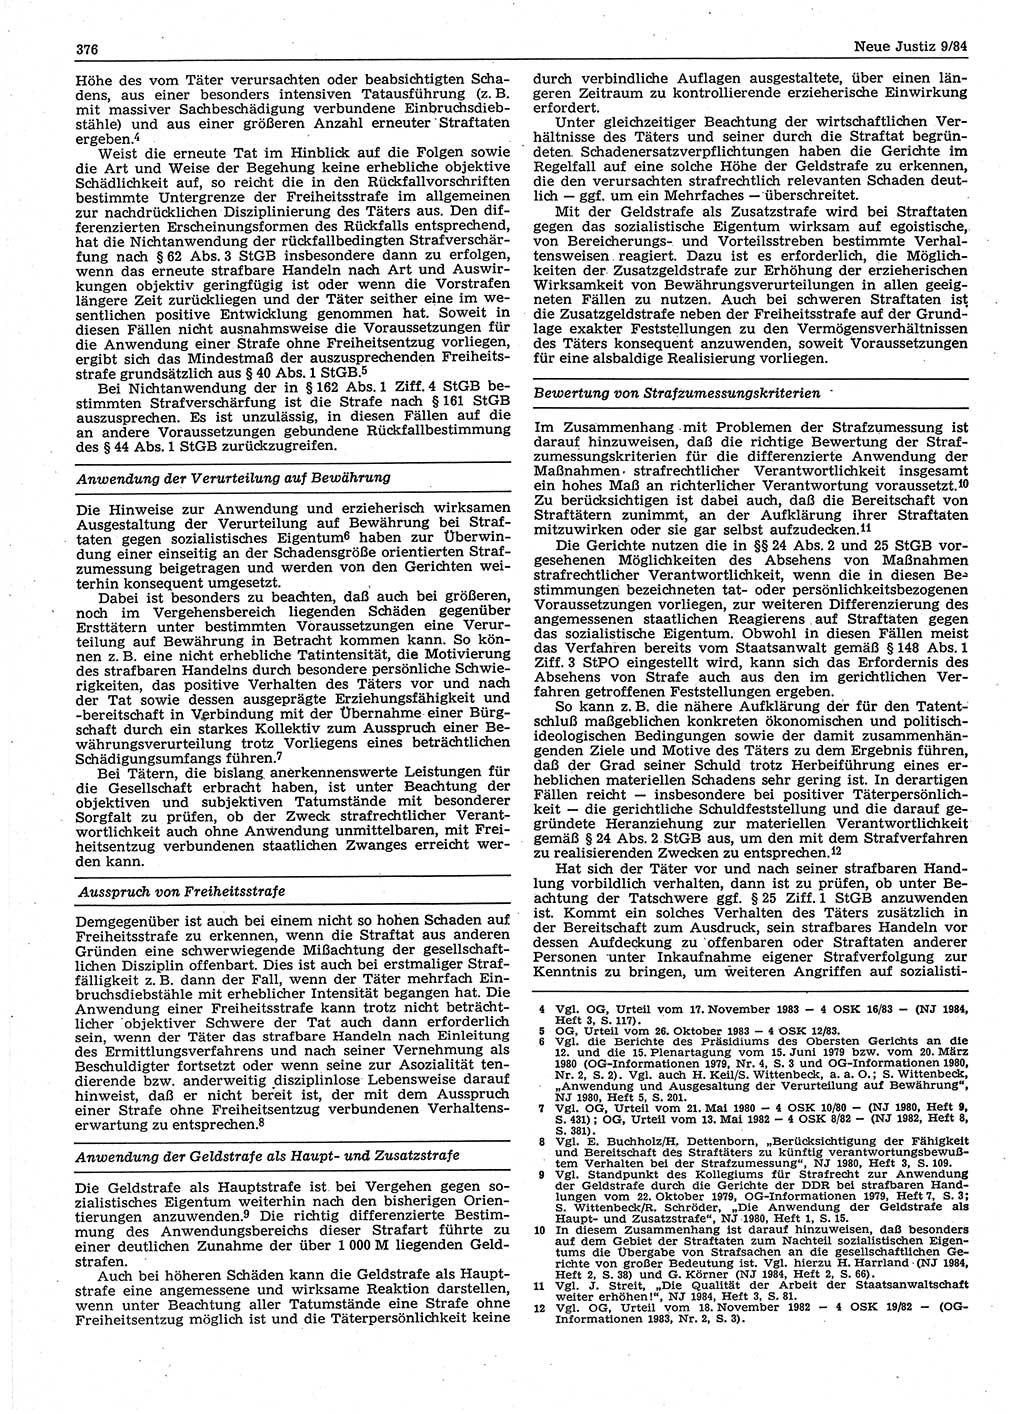 Neue Justiz (NJ), Zeitschrift für sozialistisches Recht und Gesetzlichkeit [Deutsche Demokratische Republik (DDR)], 38. Jahrgang 1984, Seite 376 (NJ DDR 1984, S. 376)